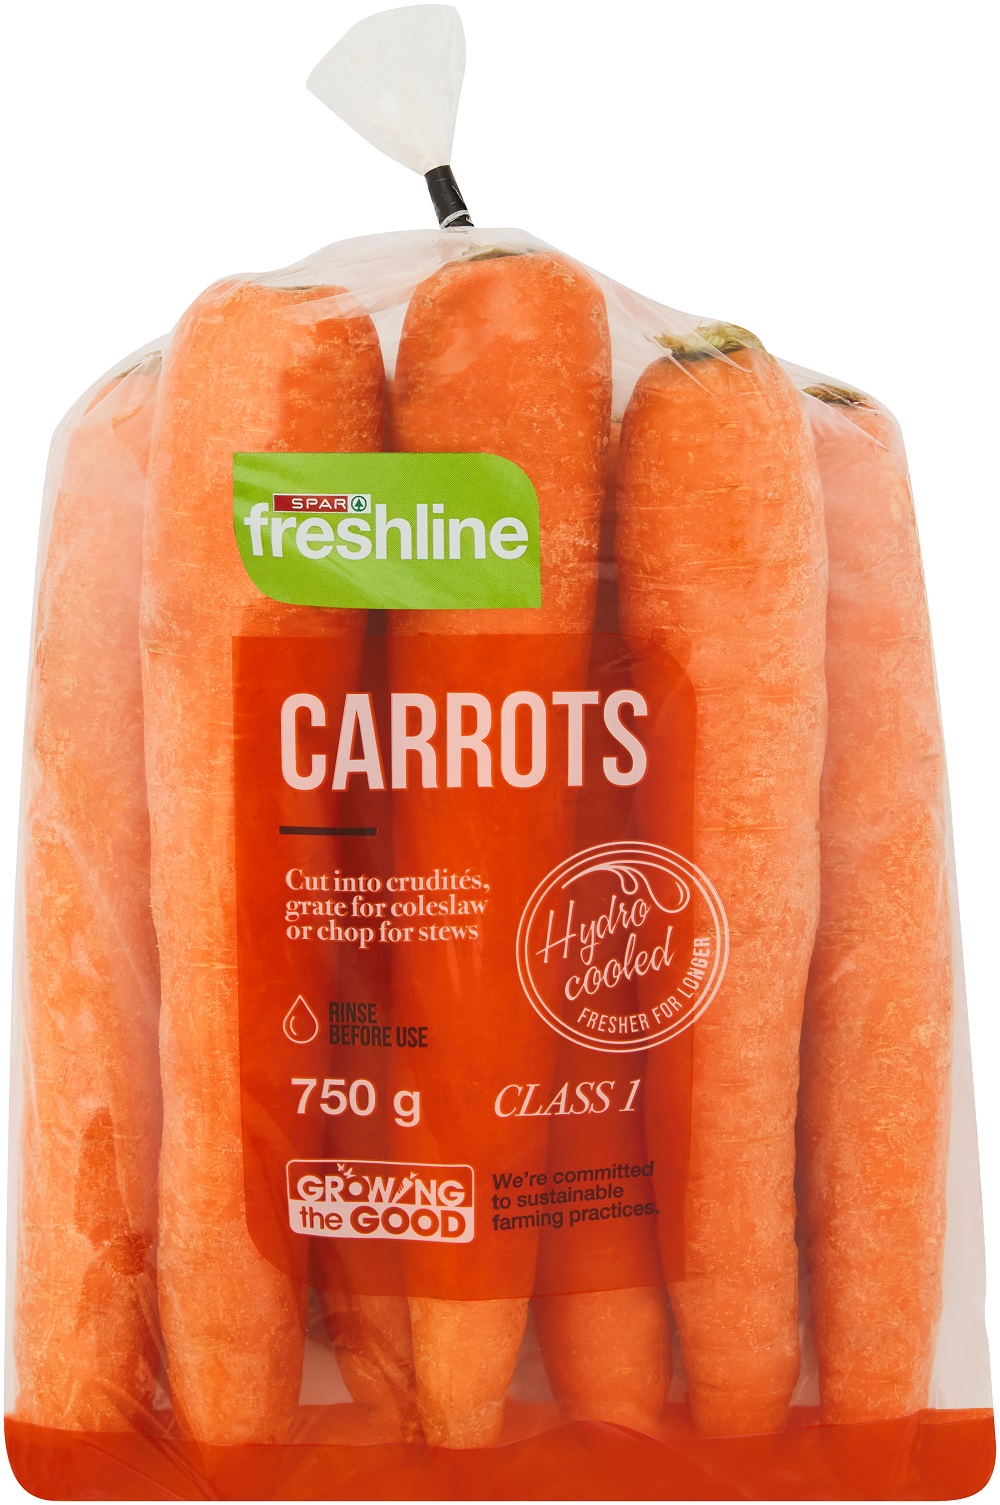 freshline carrots 750g